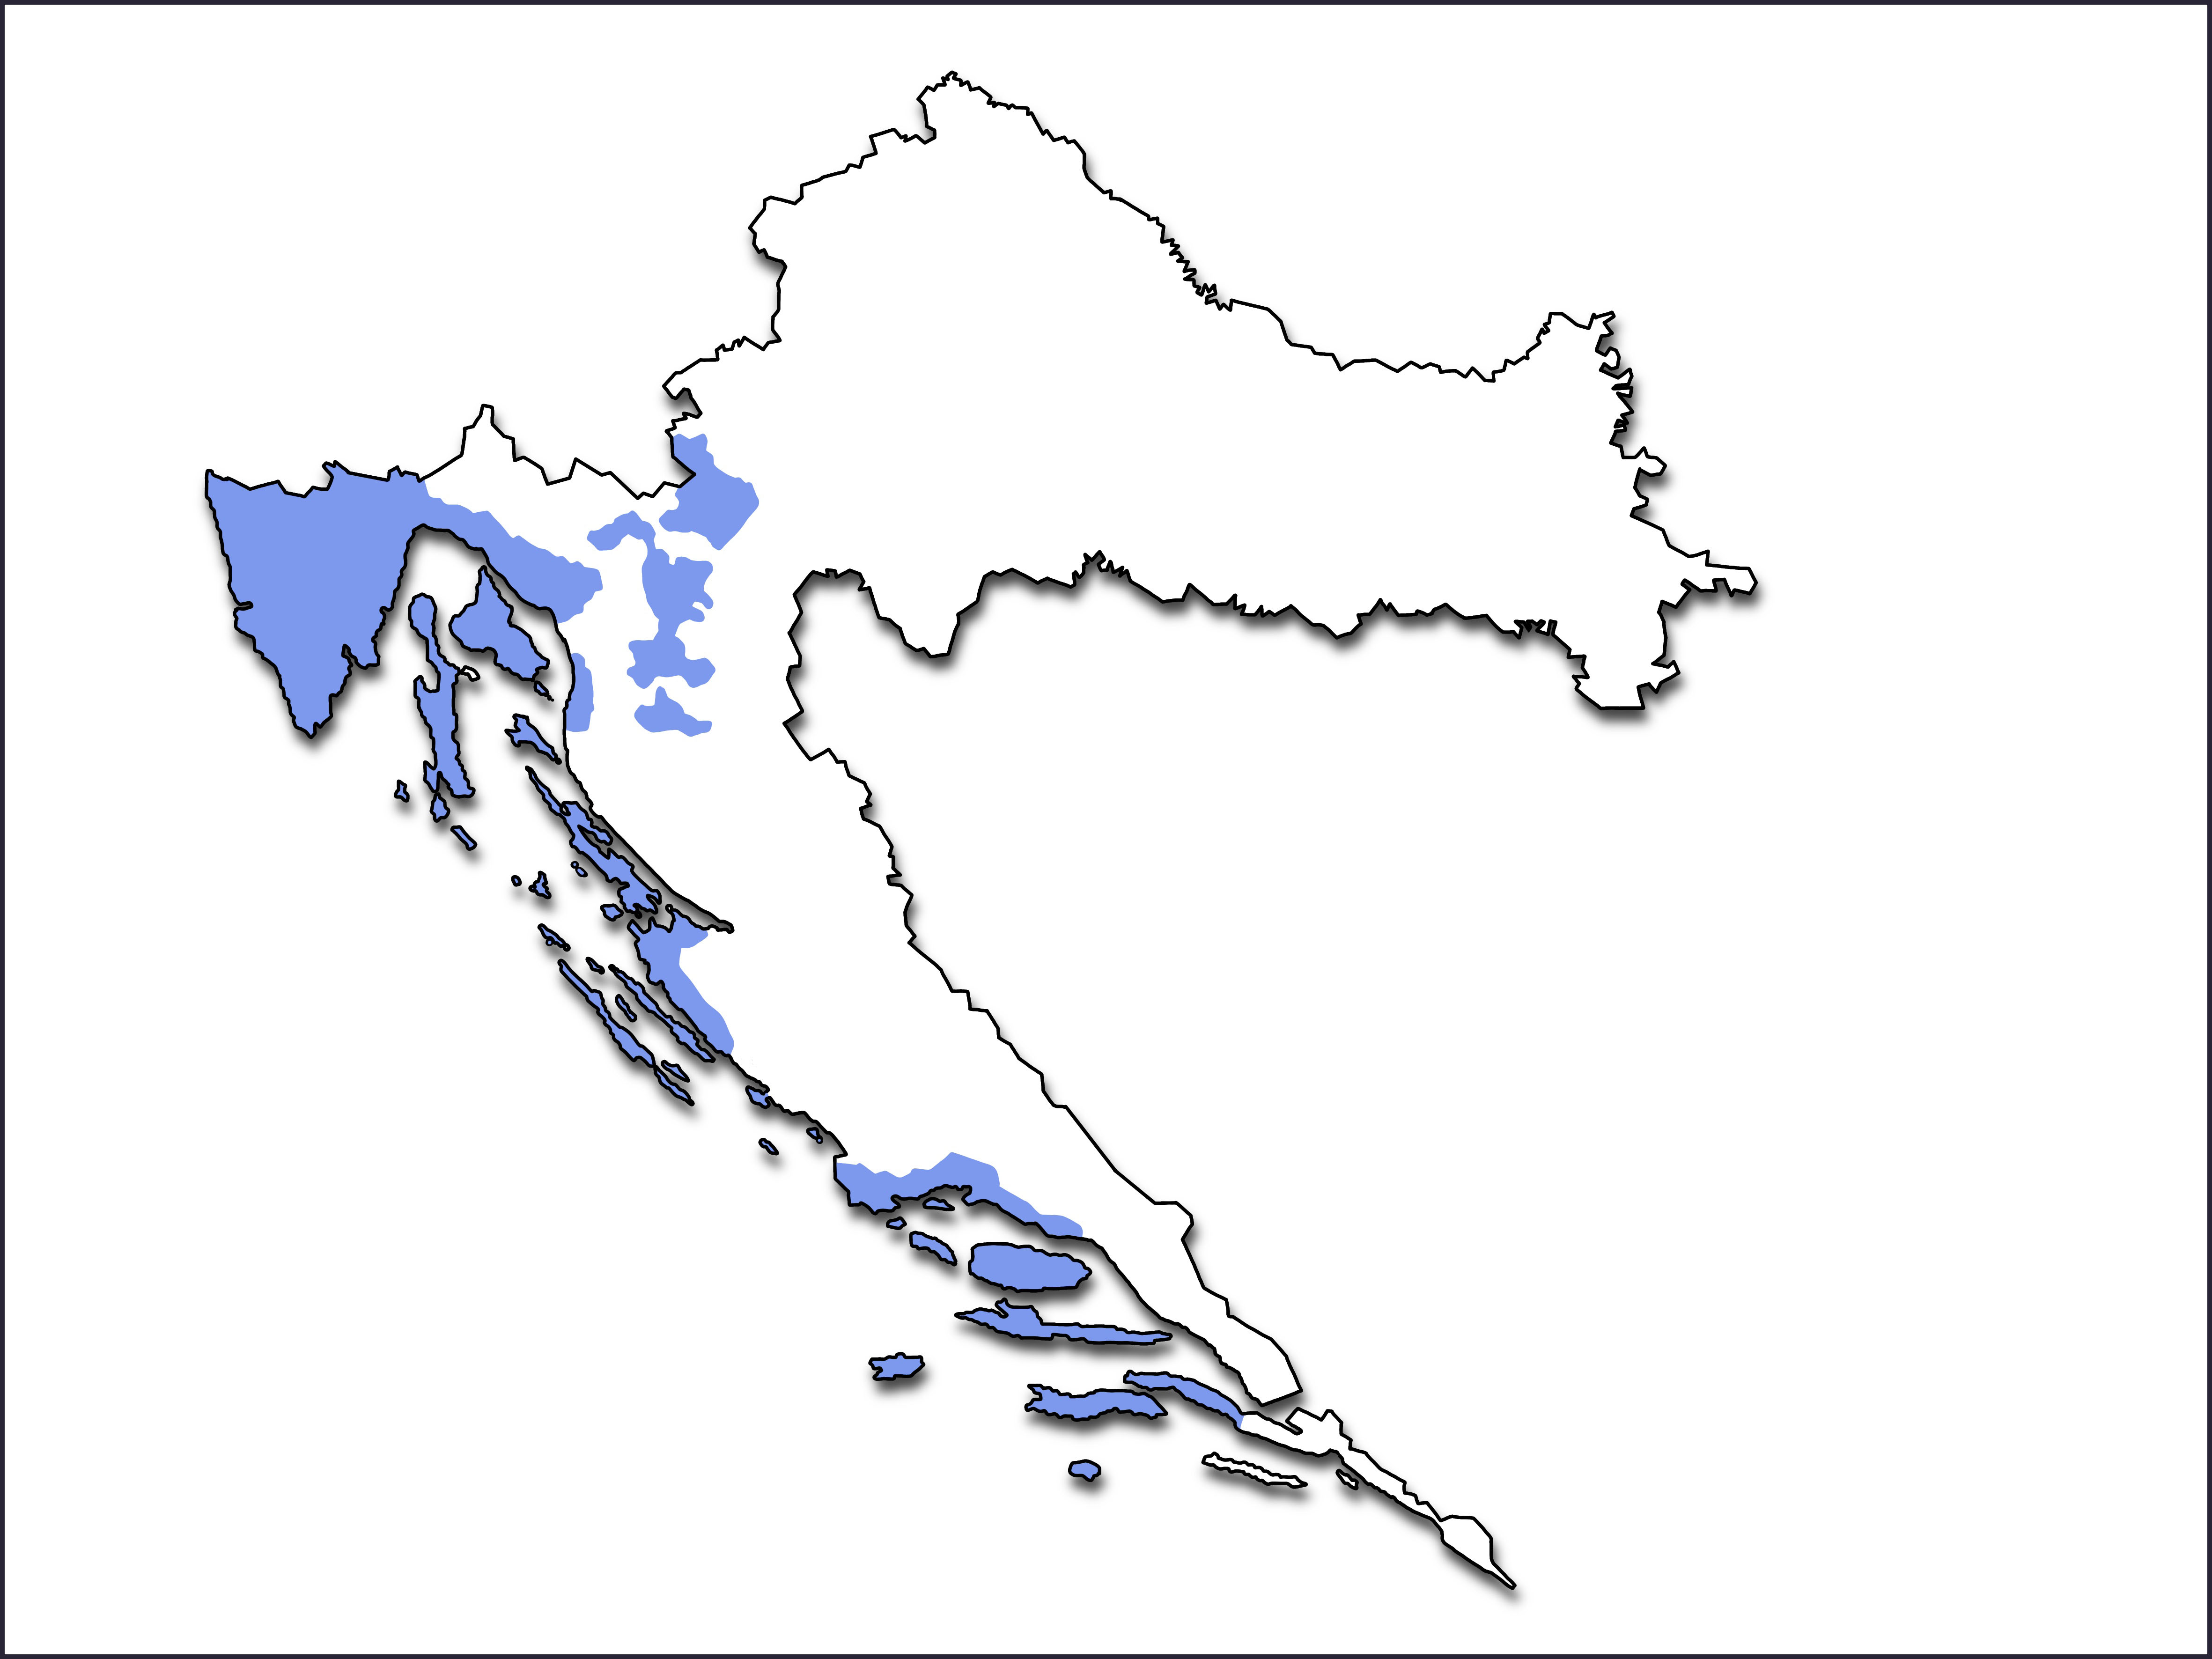 Karta Hrvatske na kojoj su plavom bojom označena područja s čakavskim narječjem: Istra, Hrvatsko primorje, otoci do Lastova, djelomično Split i Zadar, Lika, Gorski kotar i Žumberak.